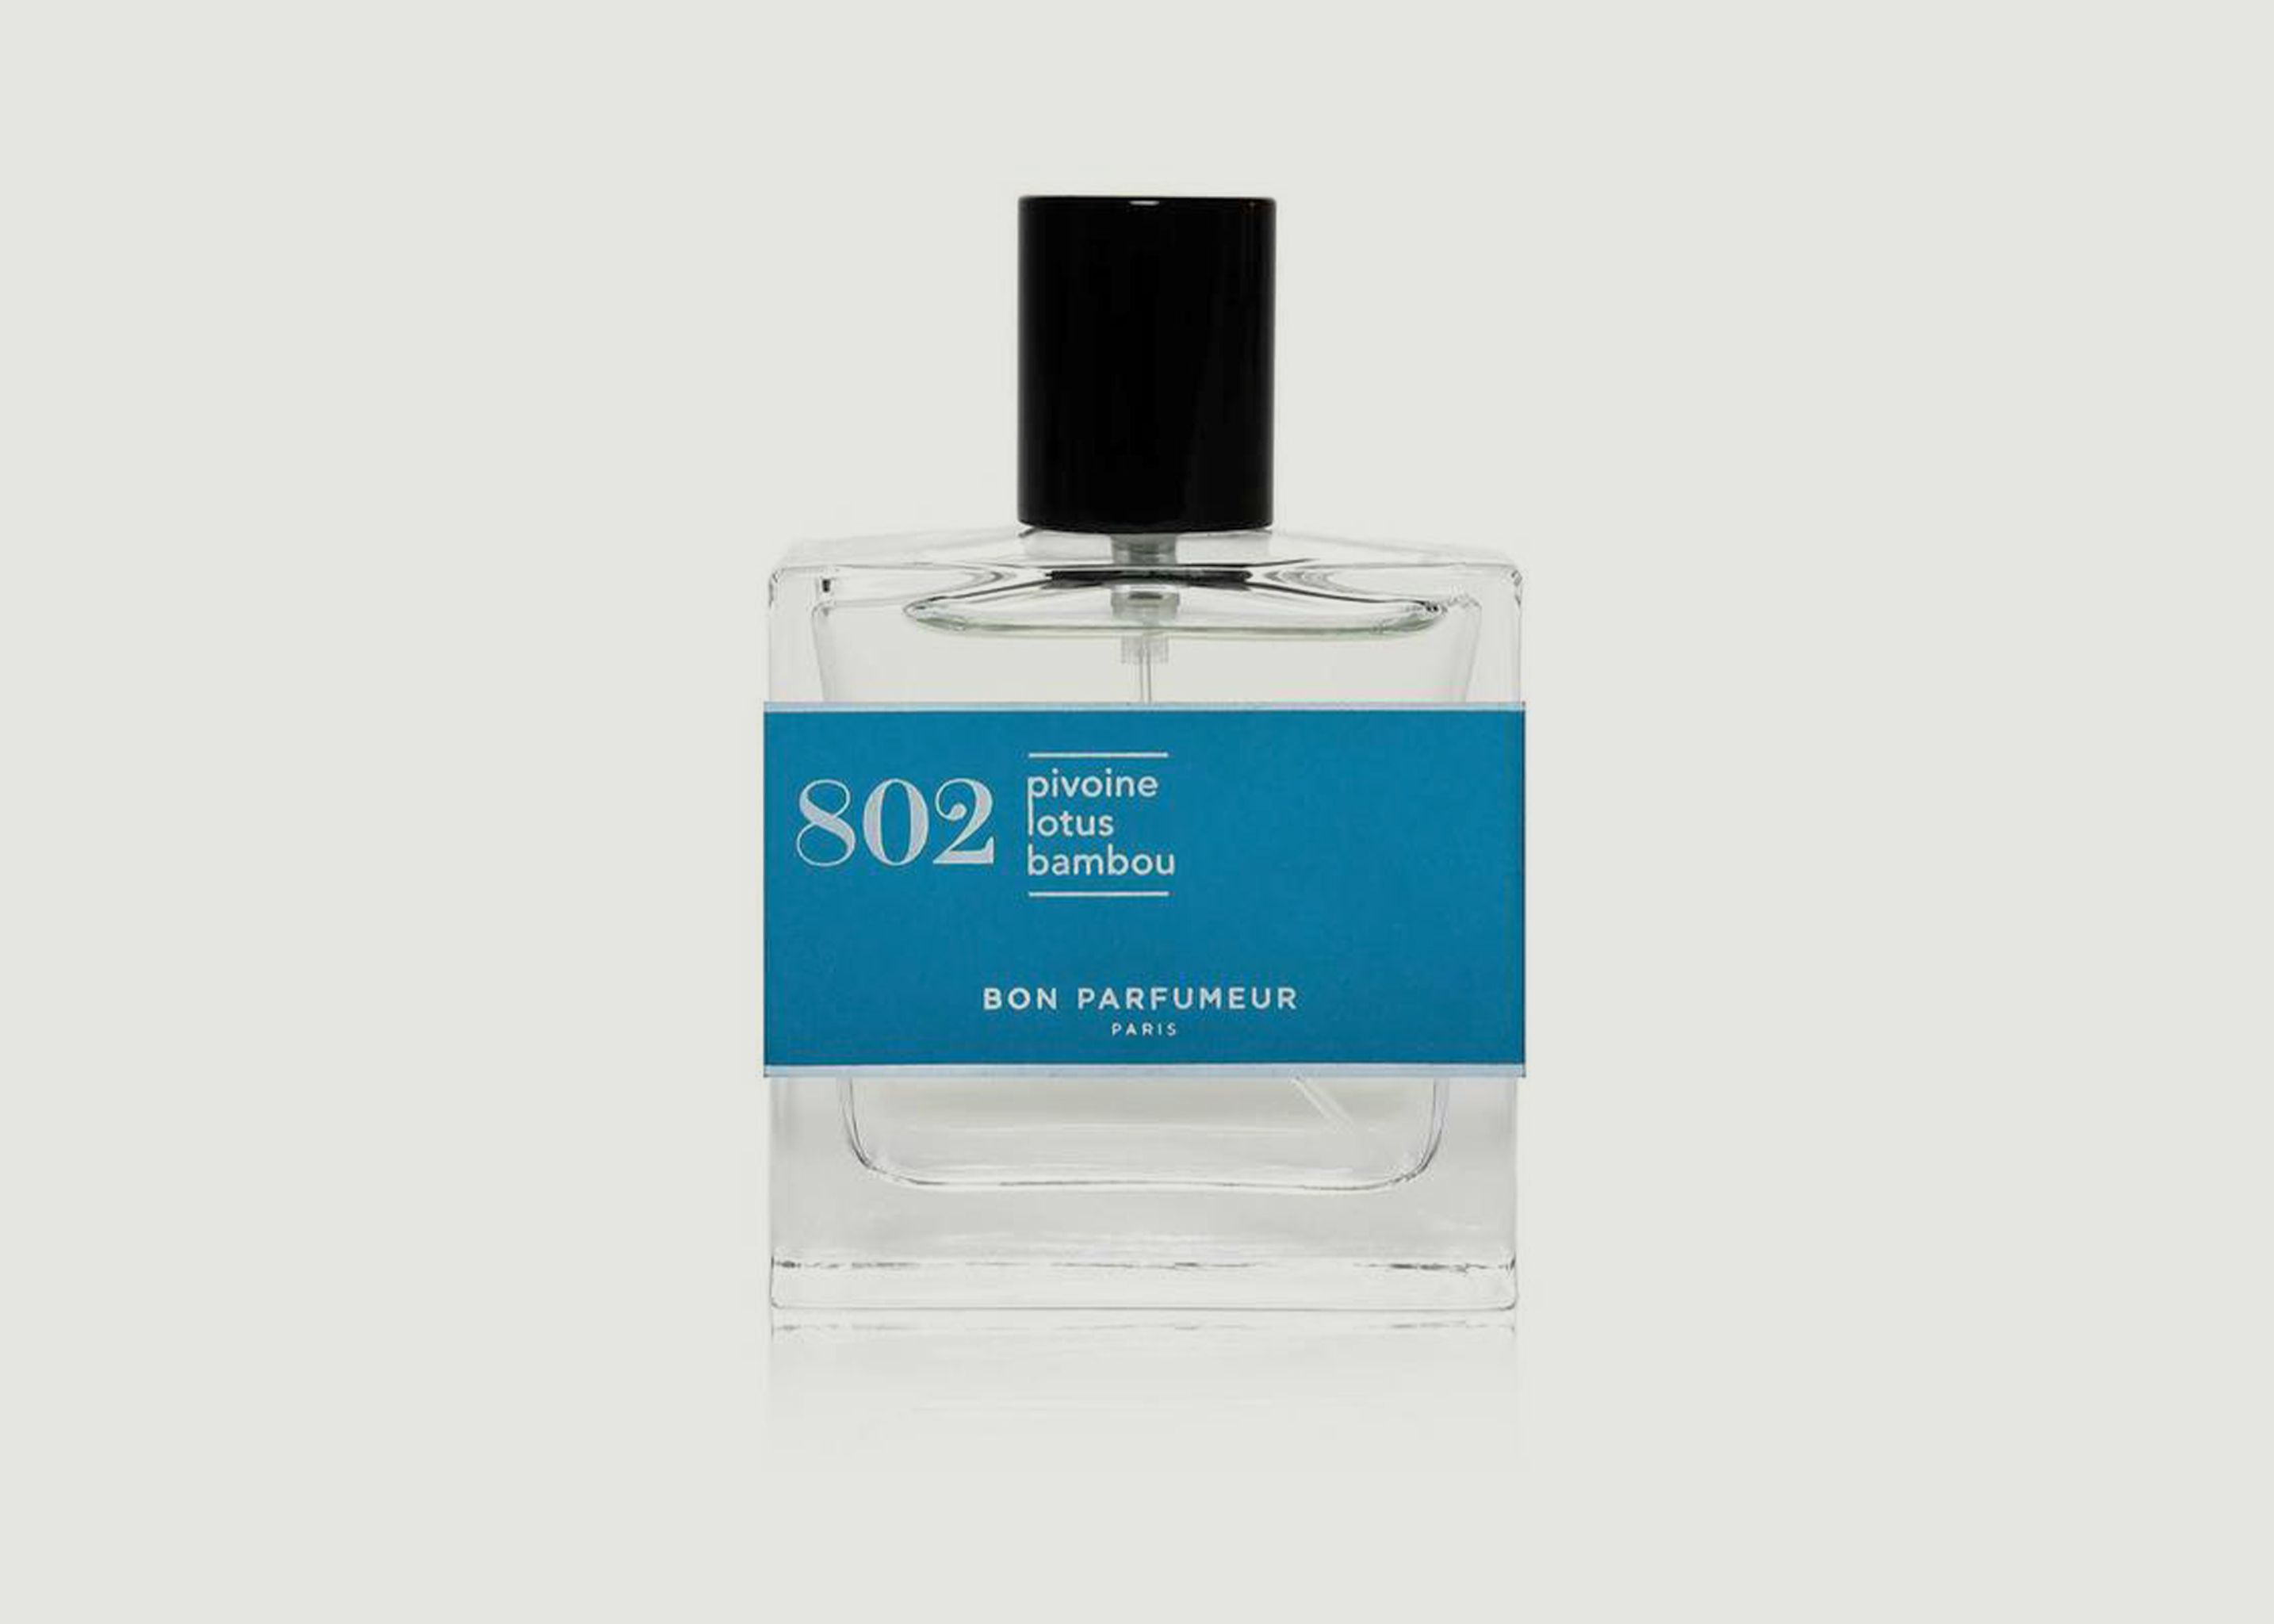 Eau de parfum 802, Pivoine, lotus, bambou - Bon Parfumeur